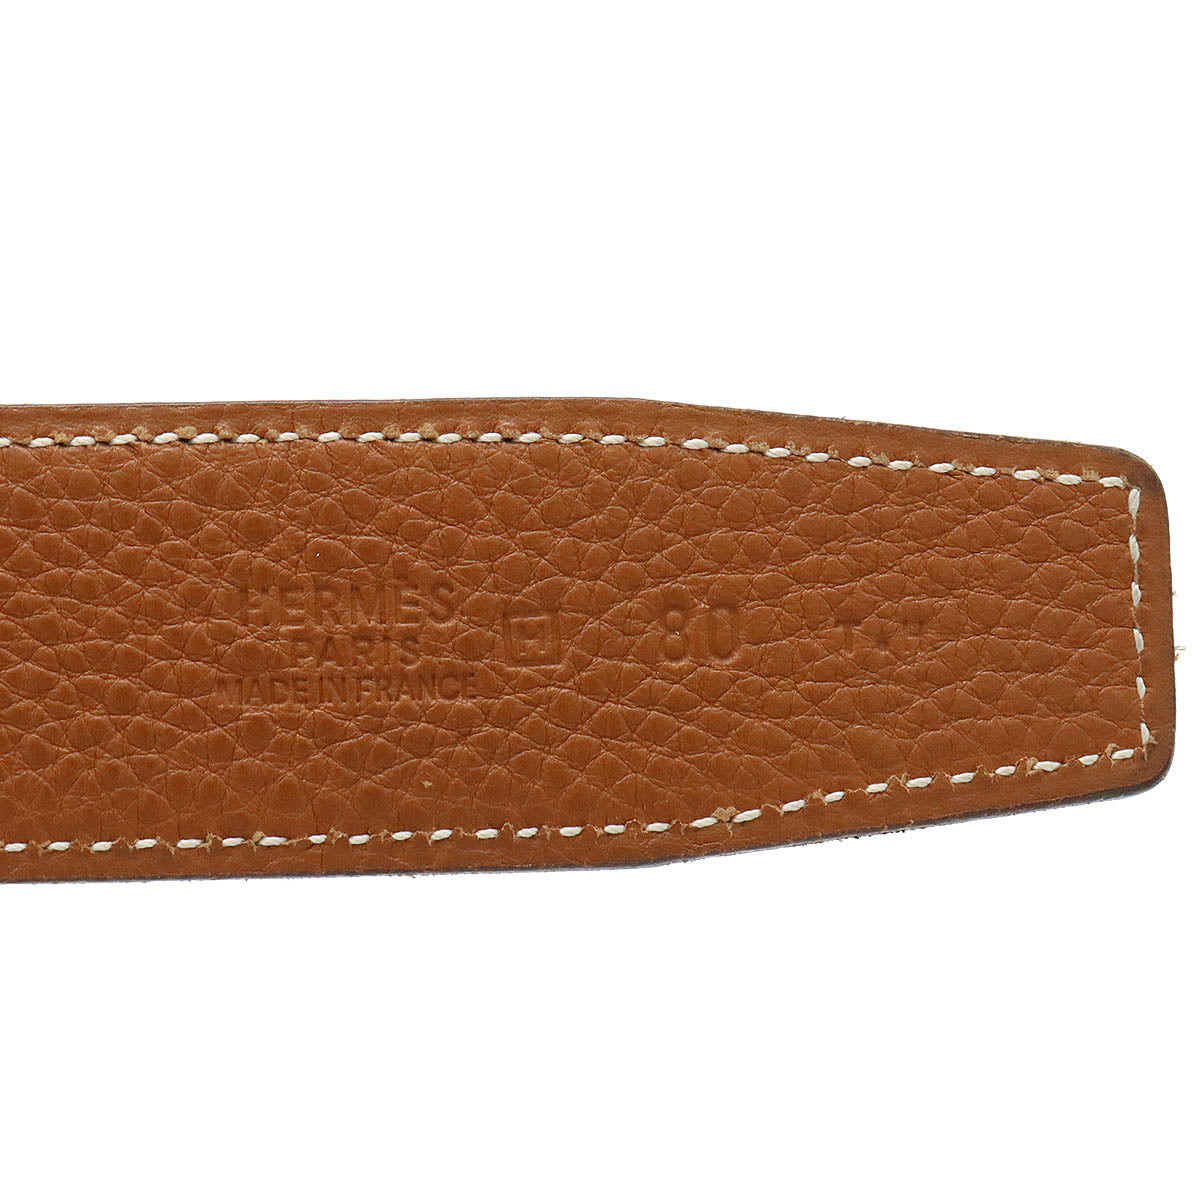 Hermes H-Belt Reverseible Leather Black Black Brown Tea Gold  